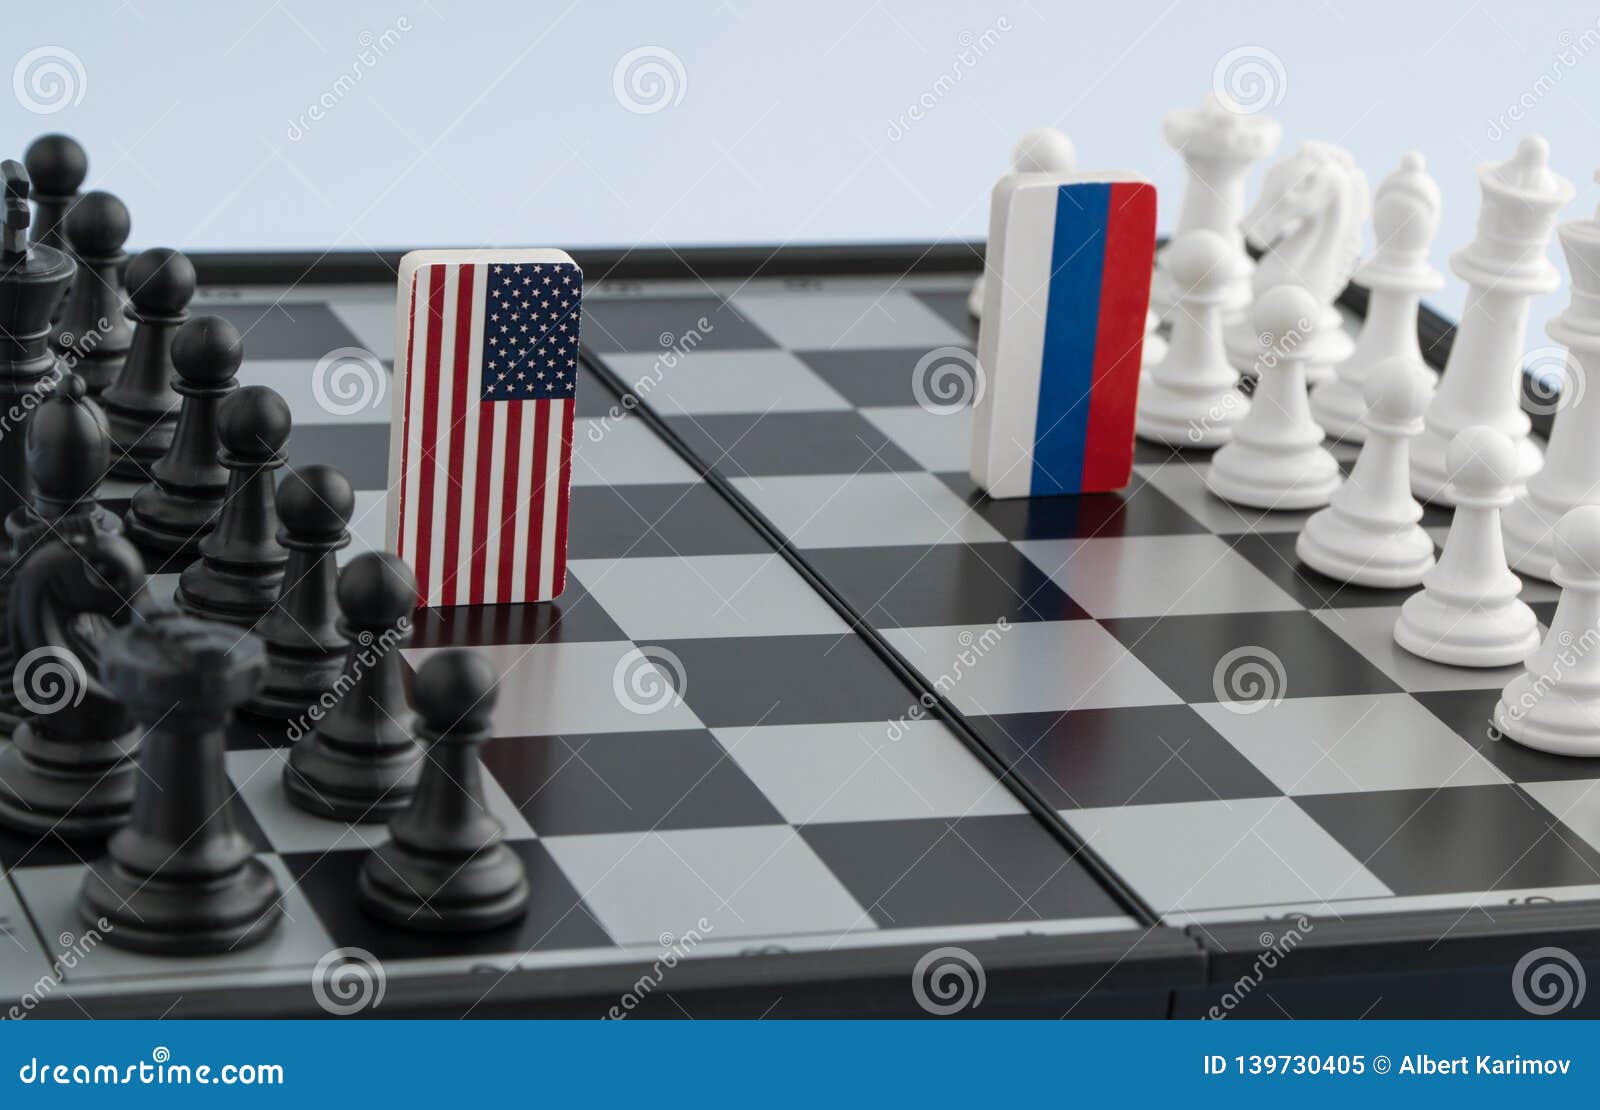 Imprimir Tela De Bandeira No Peão Xadrez Dos EUA China E Irã Imagem de  Stock - Imagem de conflito, tabuleiro: 168530123